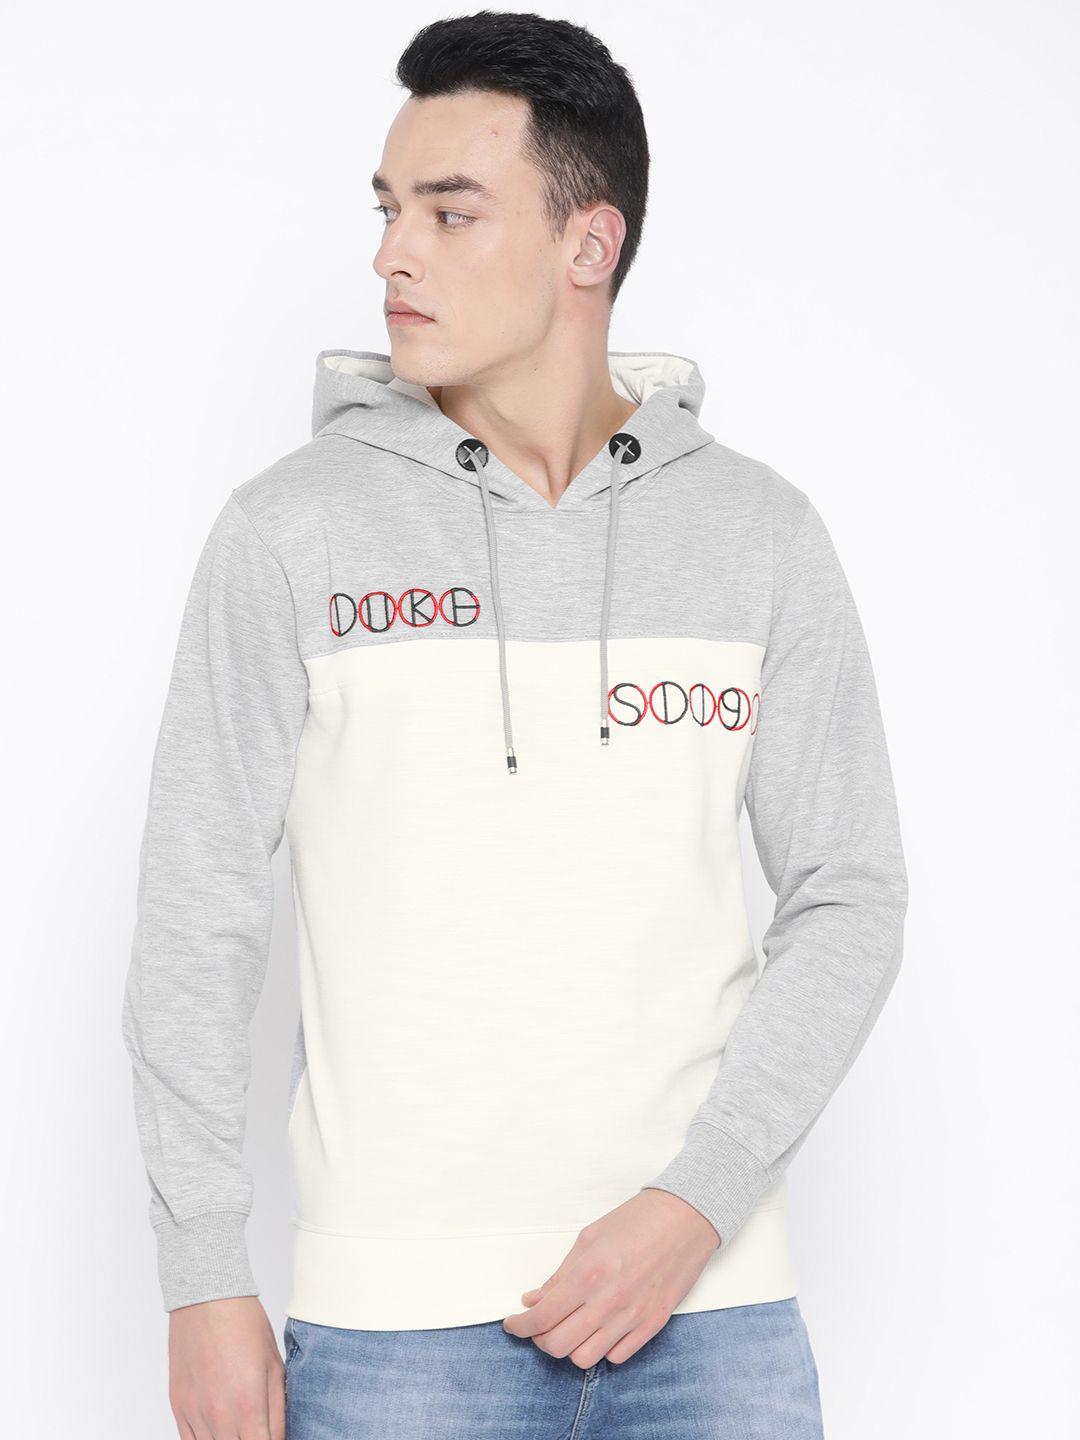 duke men off-white & grey melange colourblocked hooded sweatshirt